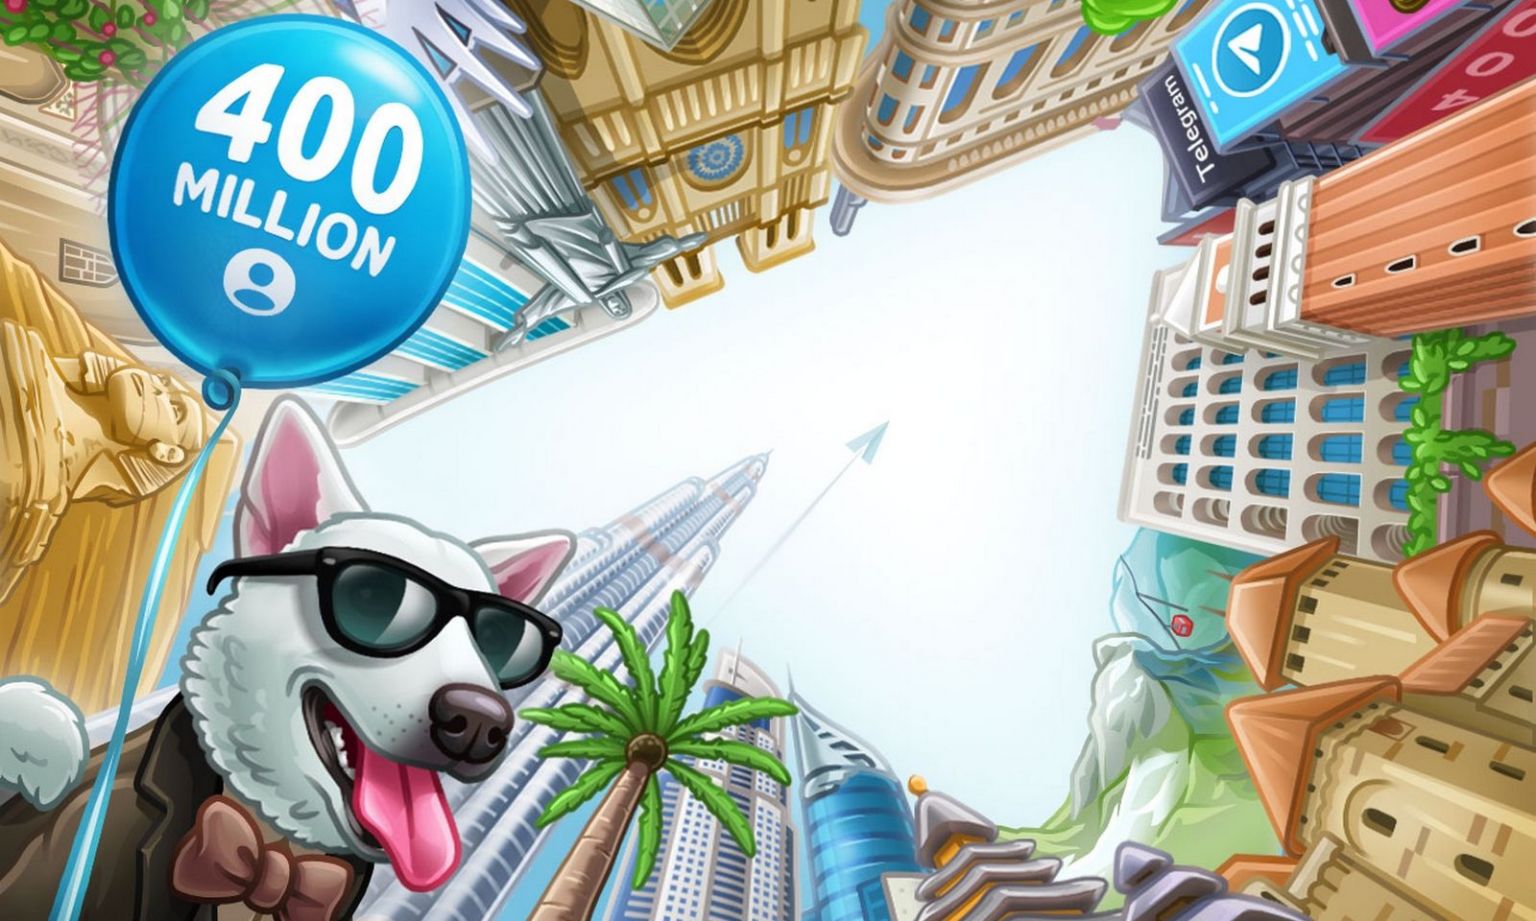 Обновление Telegram: 400 млн пользователей и запуск конкурса для создателей викторин